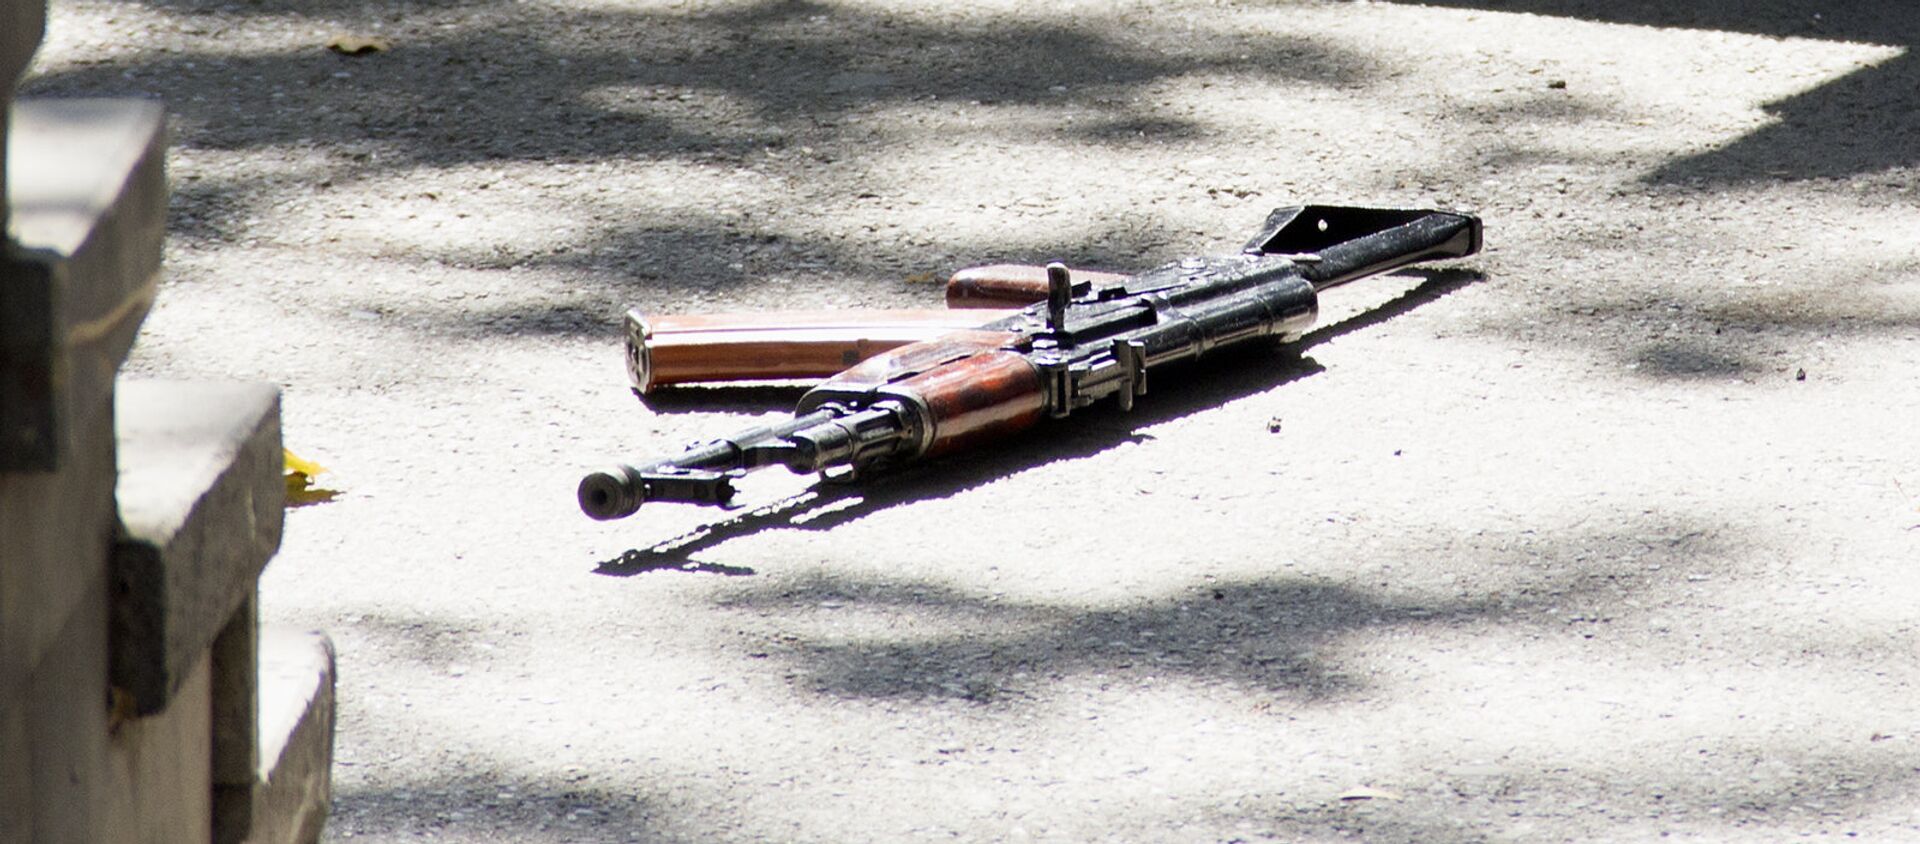 Оружие на месте на улице Бюзанда, где произошла стрельба - Sputnik Արմենիա, 1920, 05.09.2021